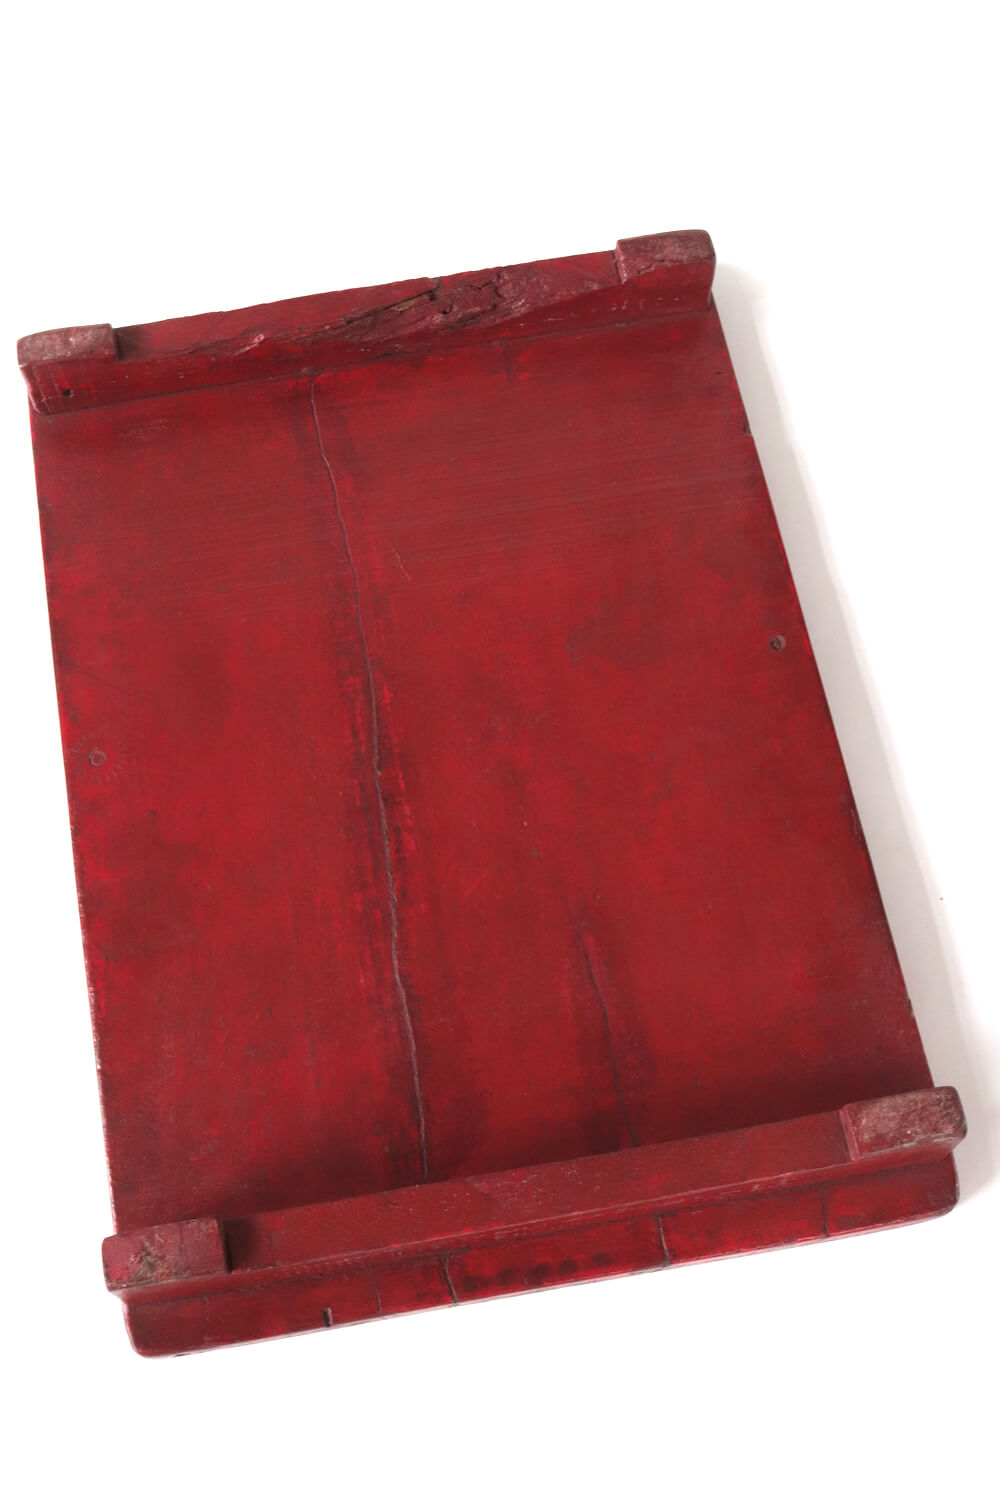 Holztablett antik rot 54x37